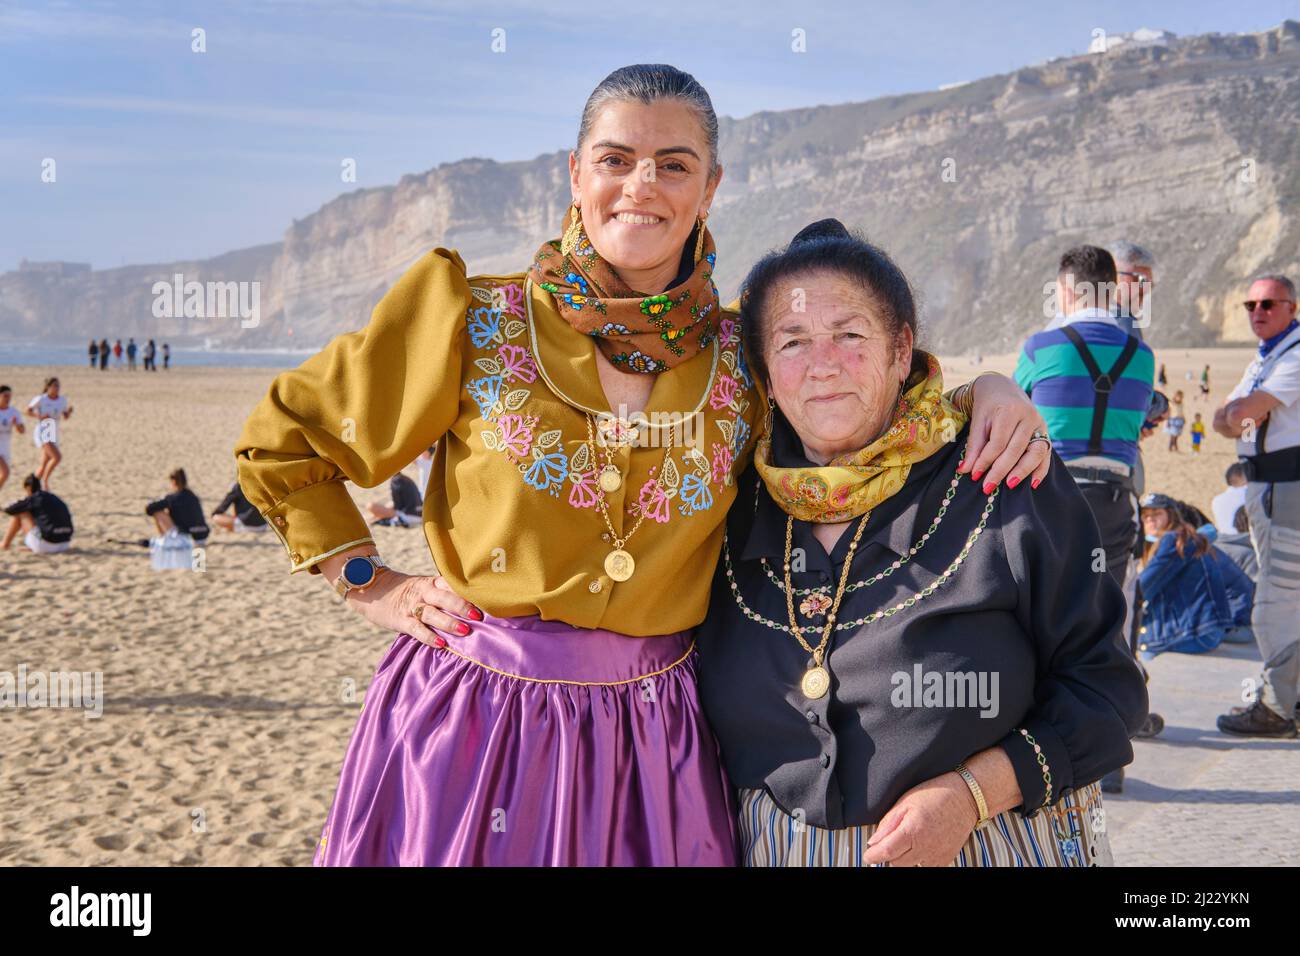 Le jour de la fête, les femmes de Nazaré dégusteraient la tenue traditionnelle. Robes colorées avec sept jupes. Nazaré, Portugal Banque D'Images